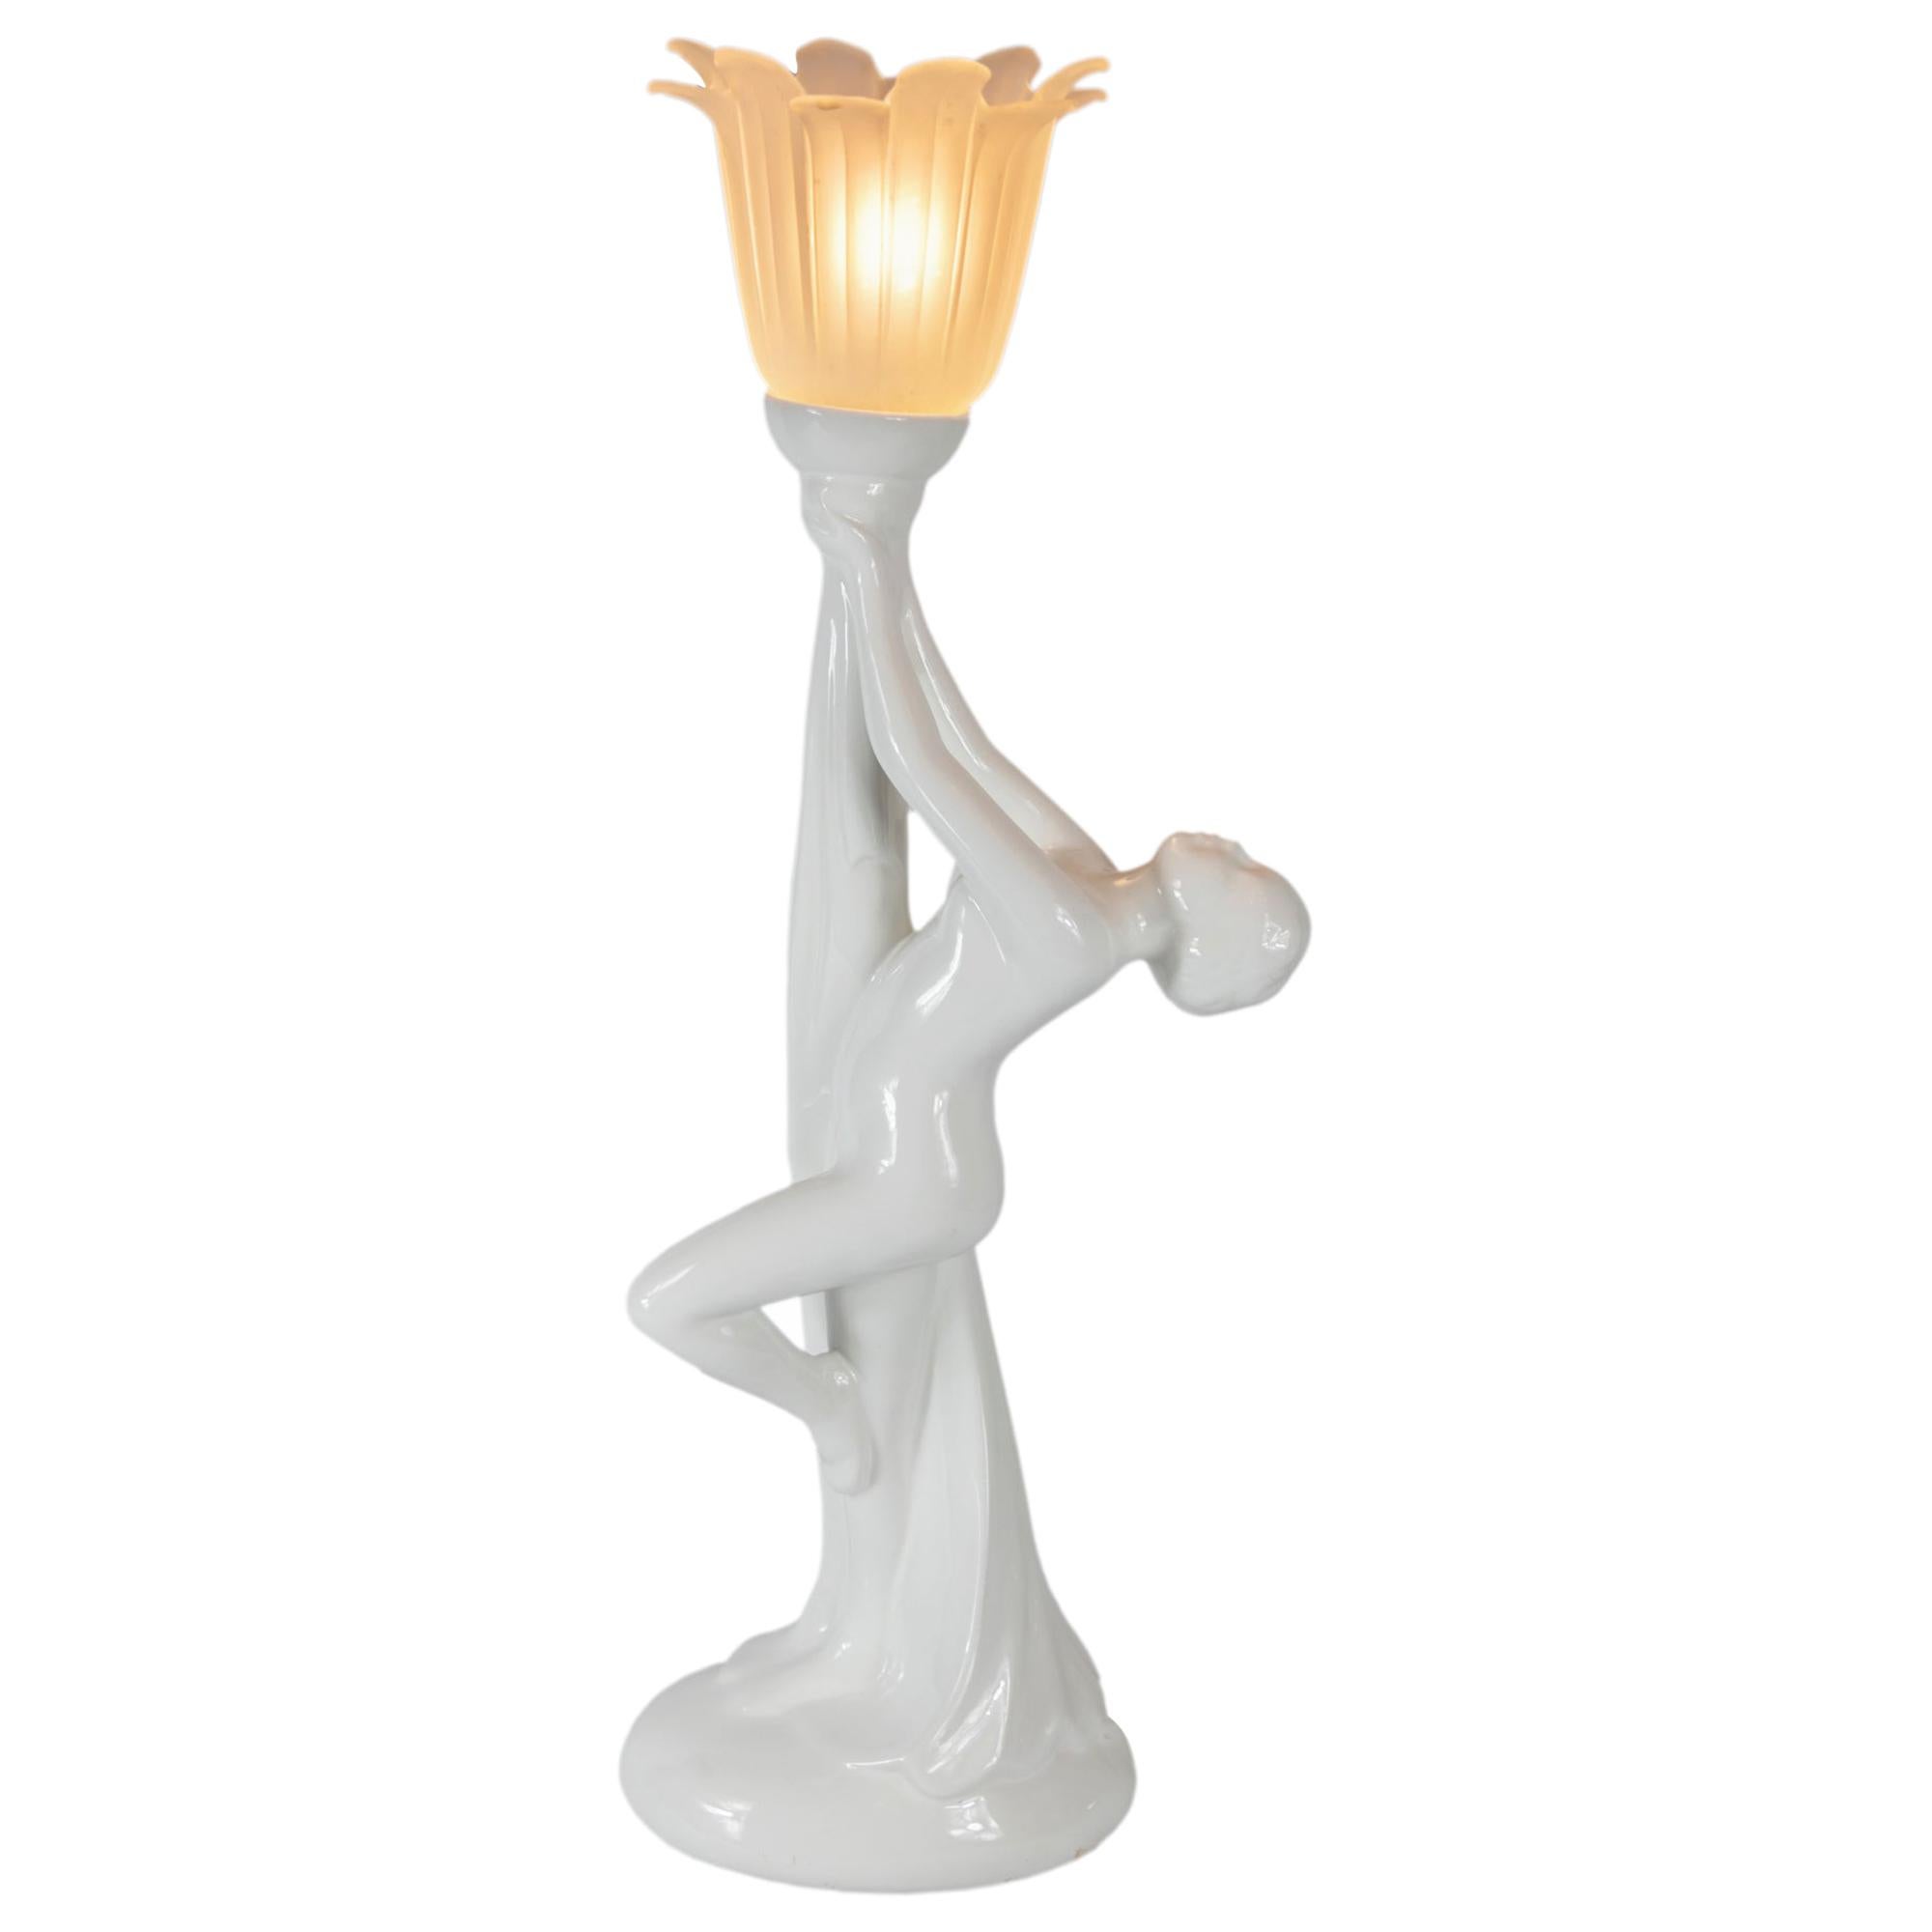 Art Deco Ceramic Table Lamp